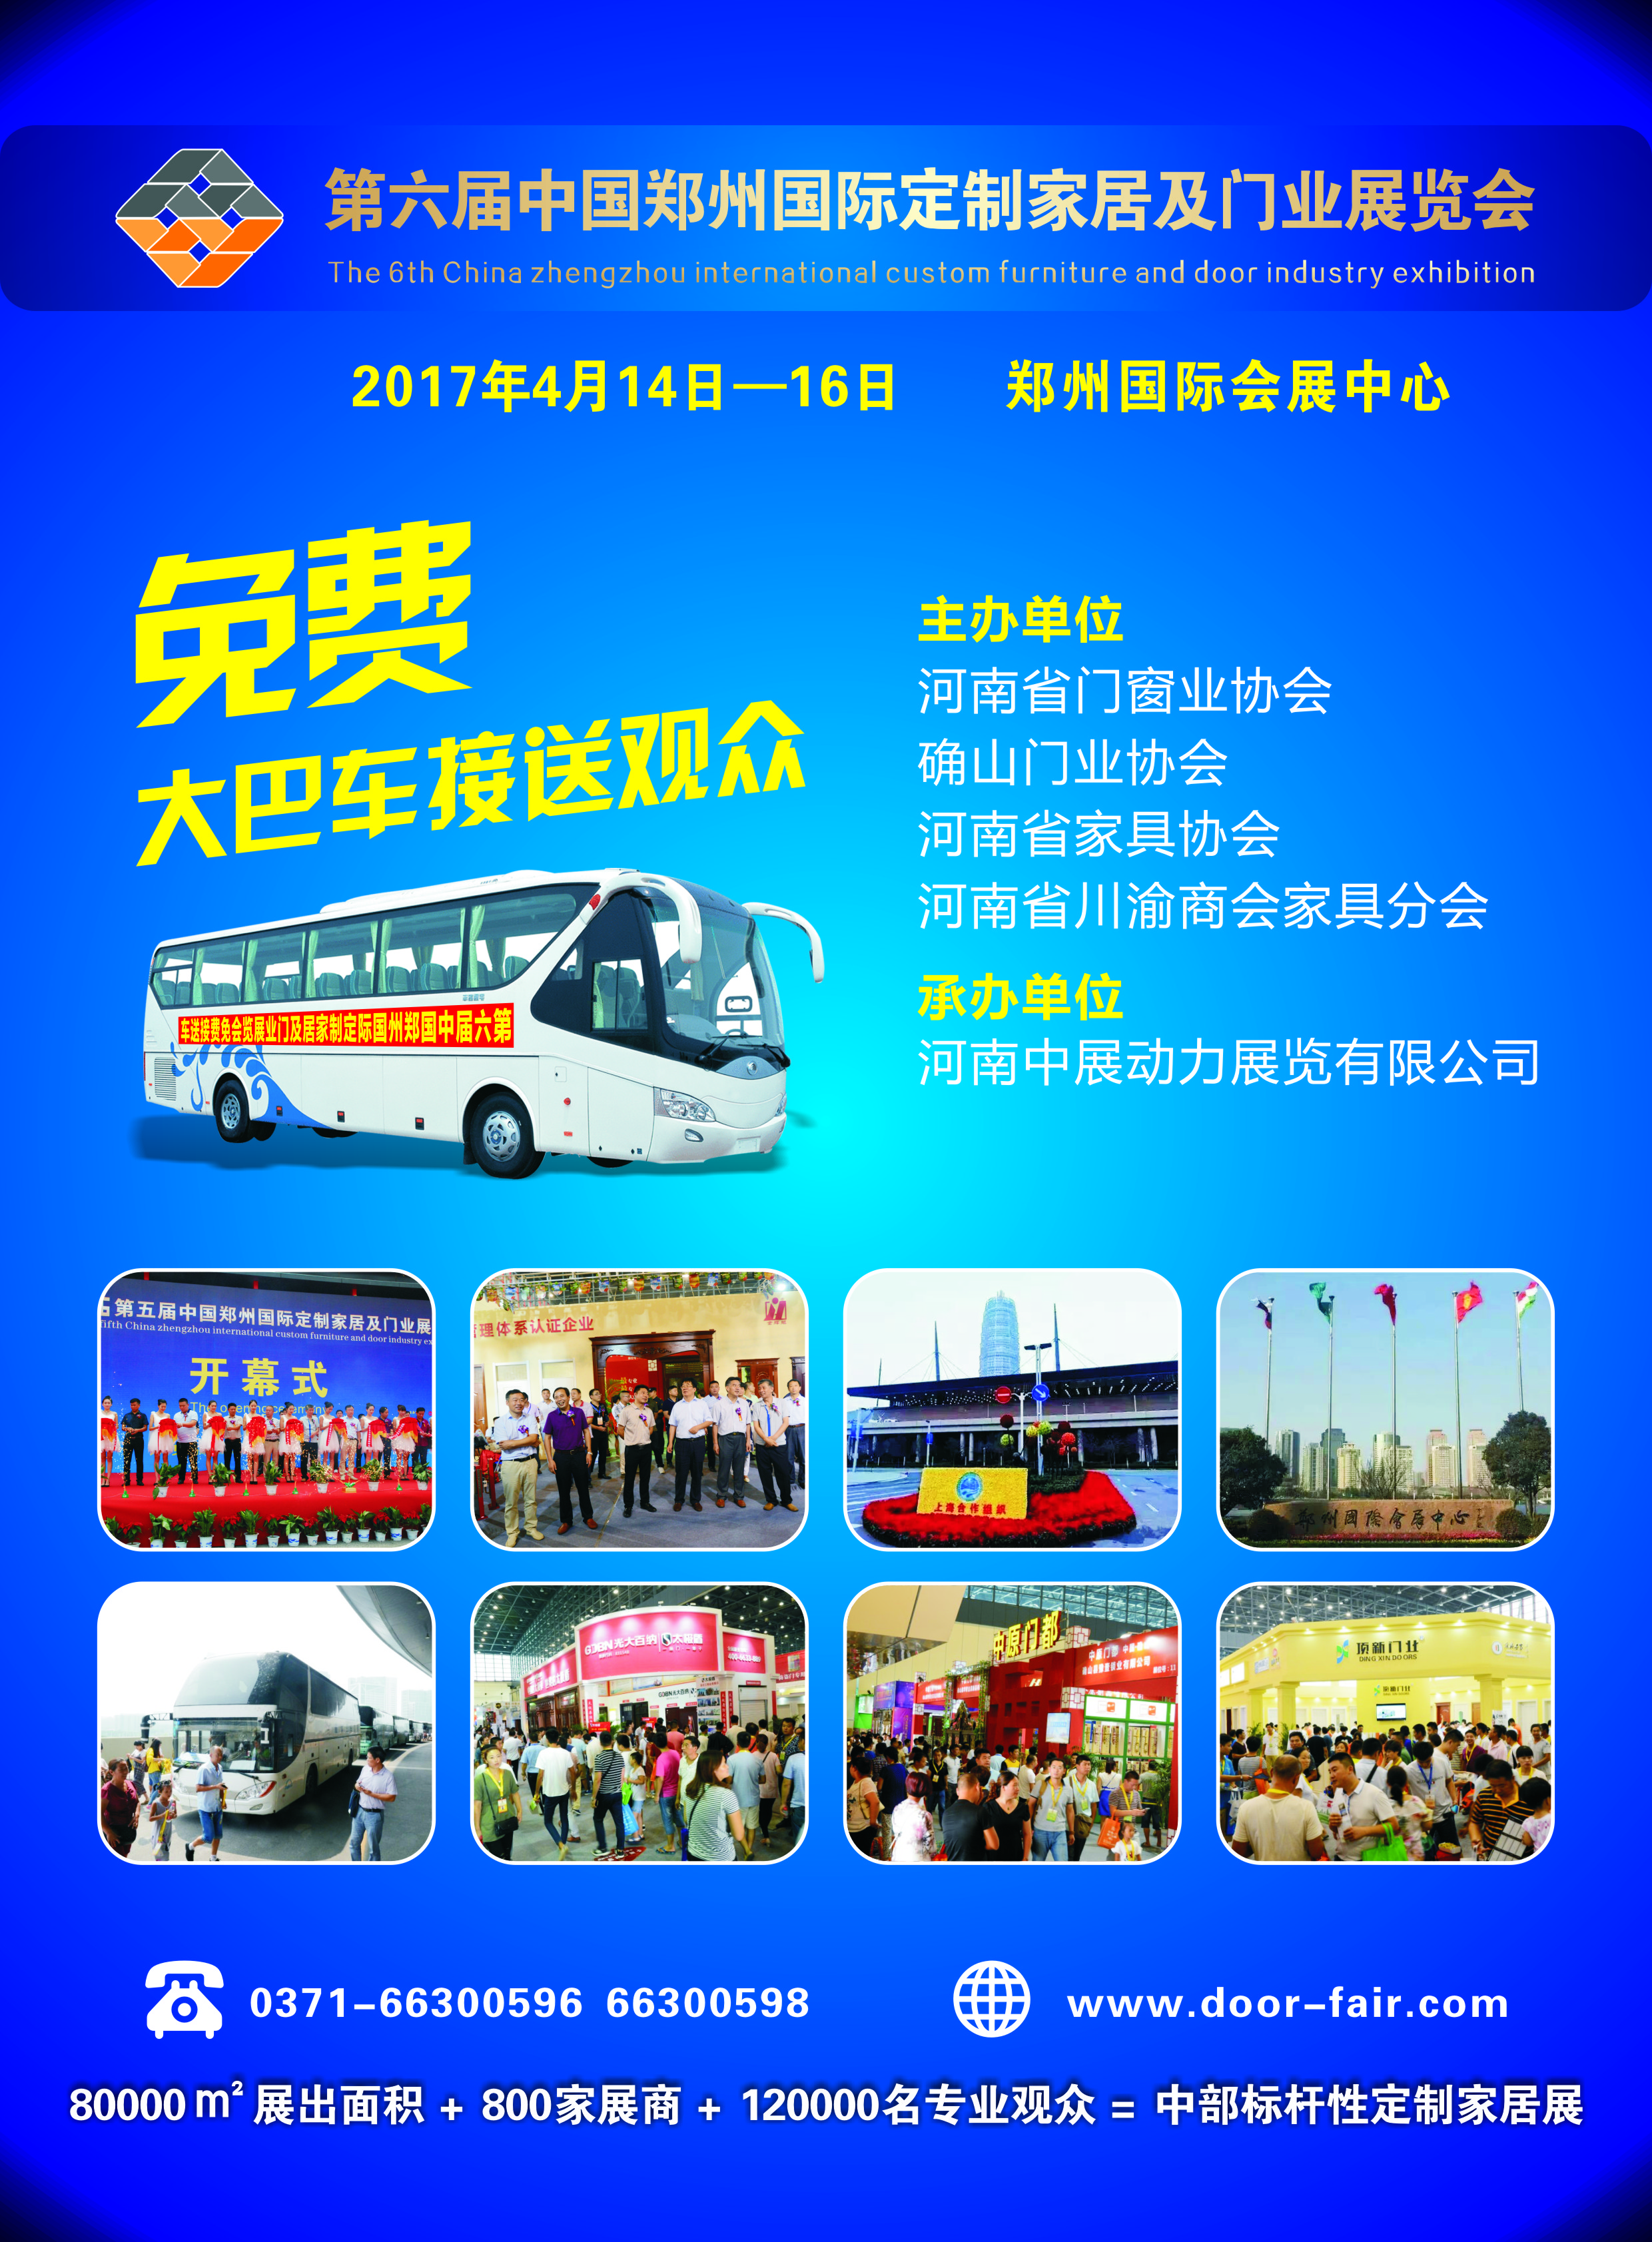 第六届中国郑州国际定制家居及门业展览会